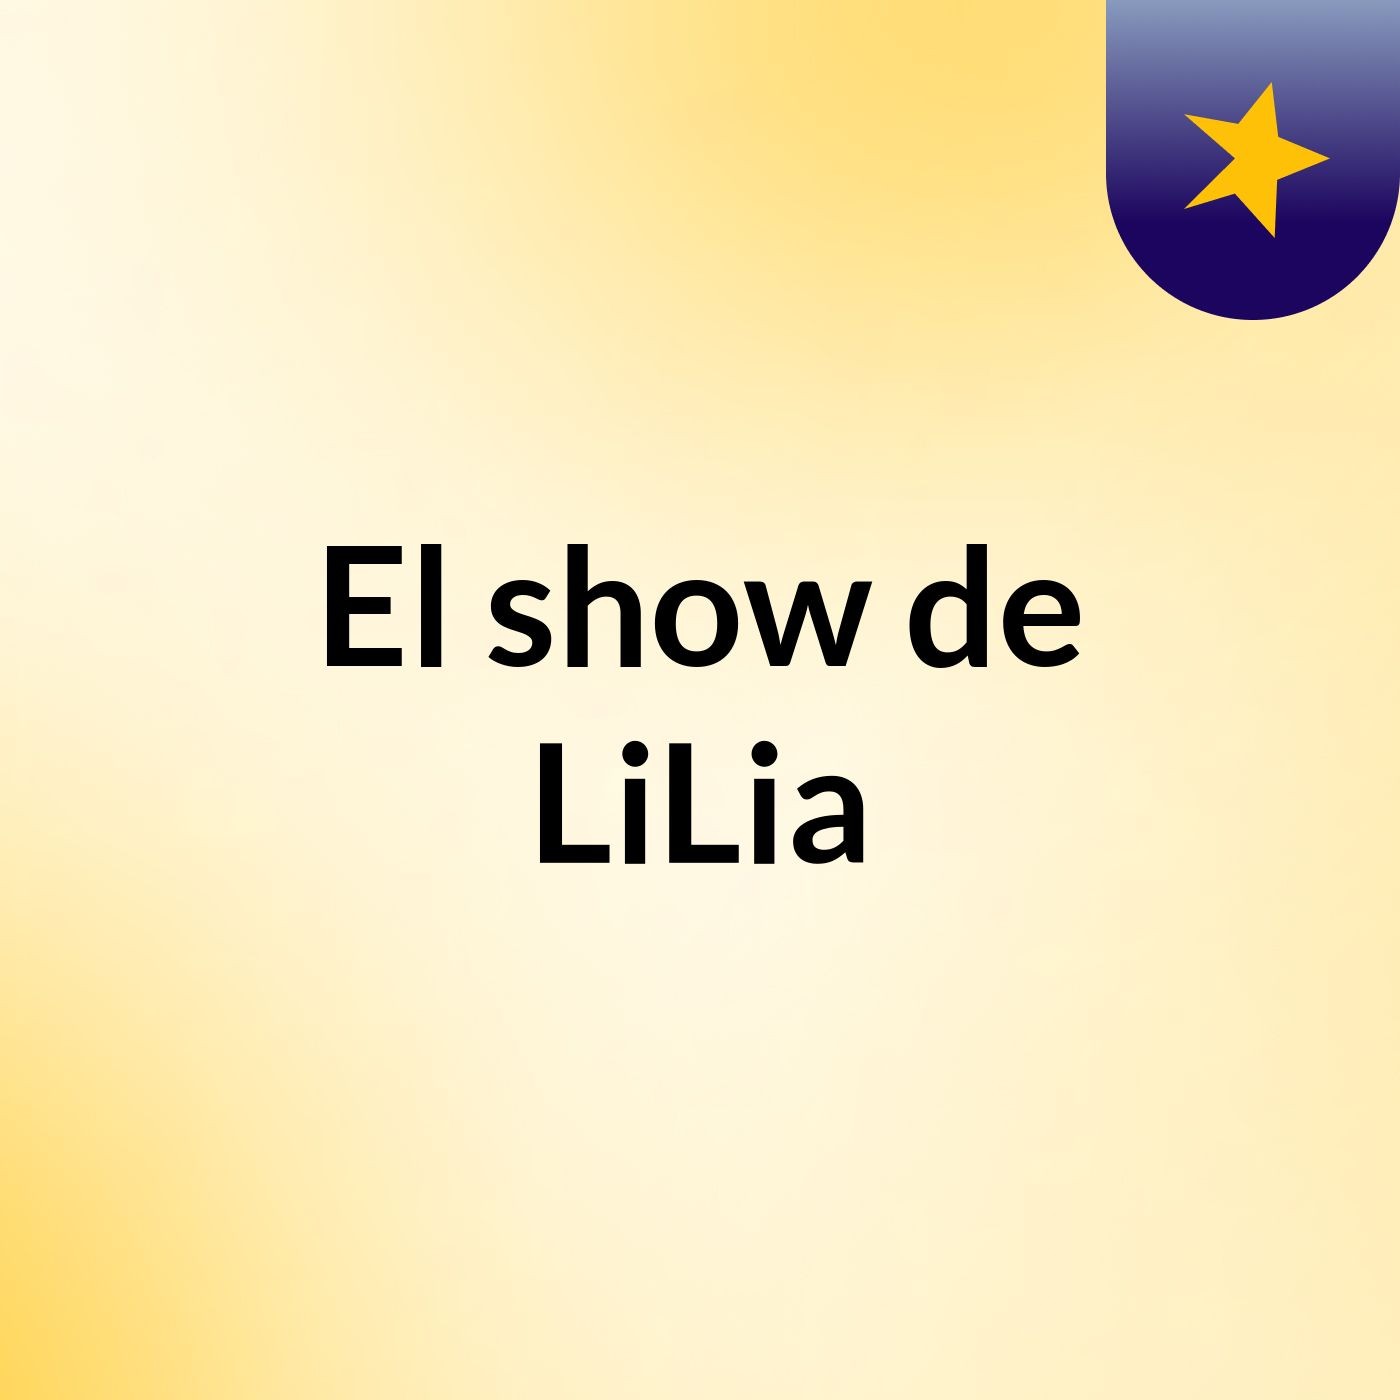 El show de LiLia